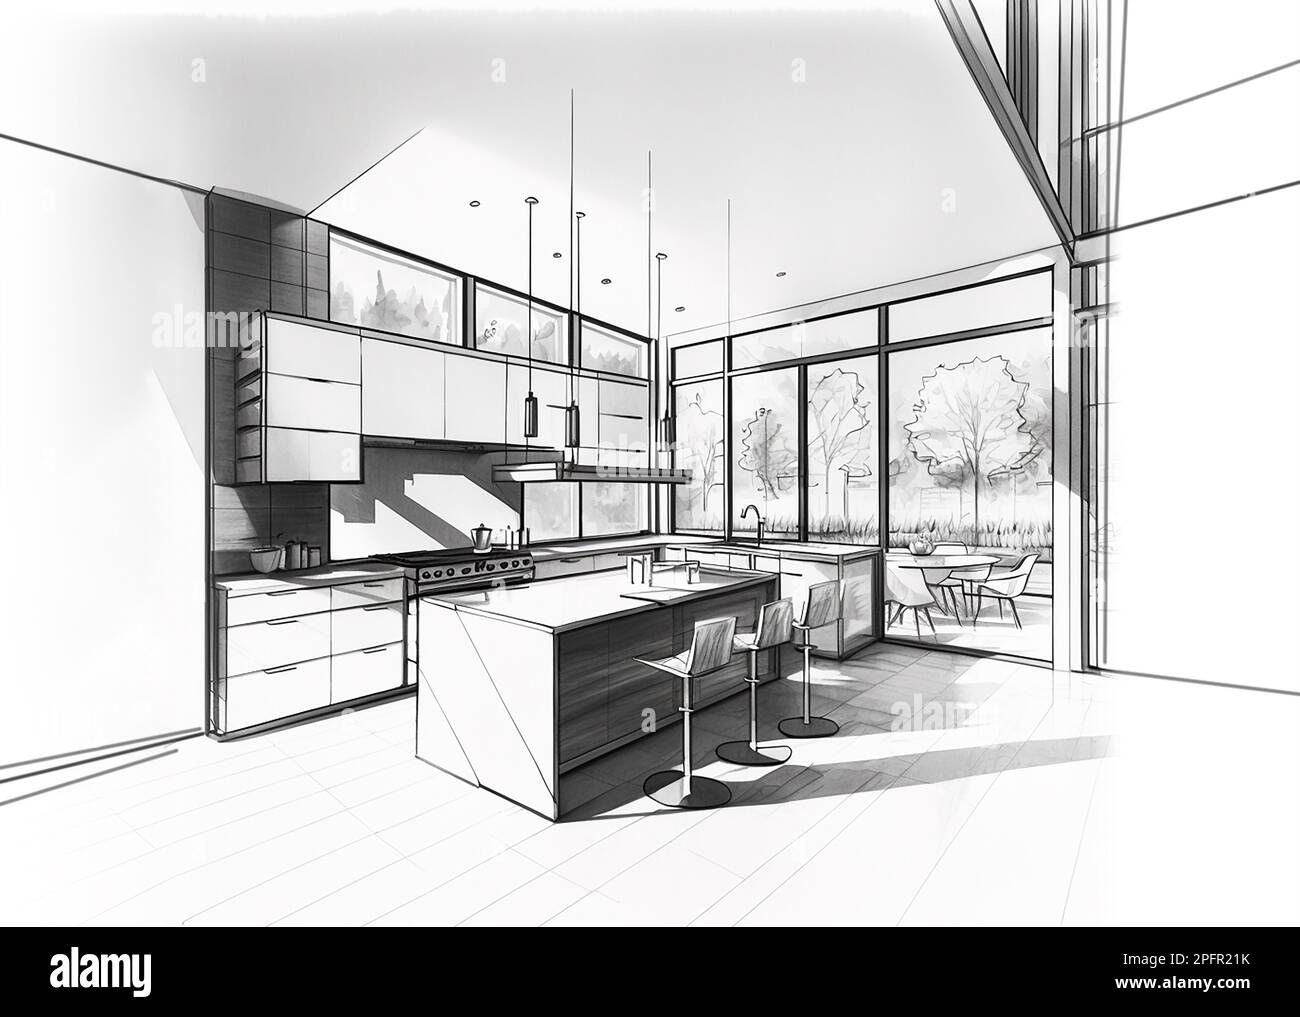 Boceto arquitectónico de una cocina moderna moderna, dibujo en blanco y negro Foto de stock